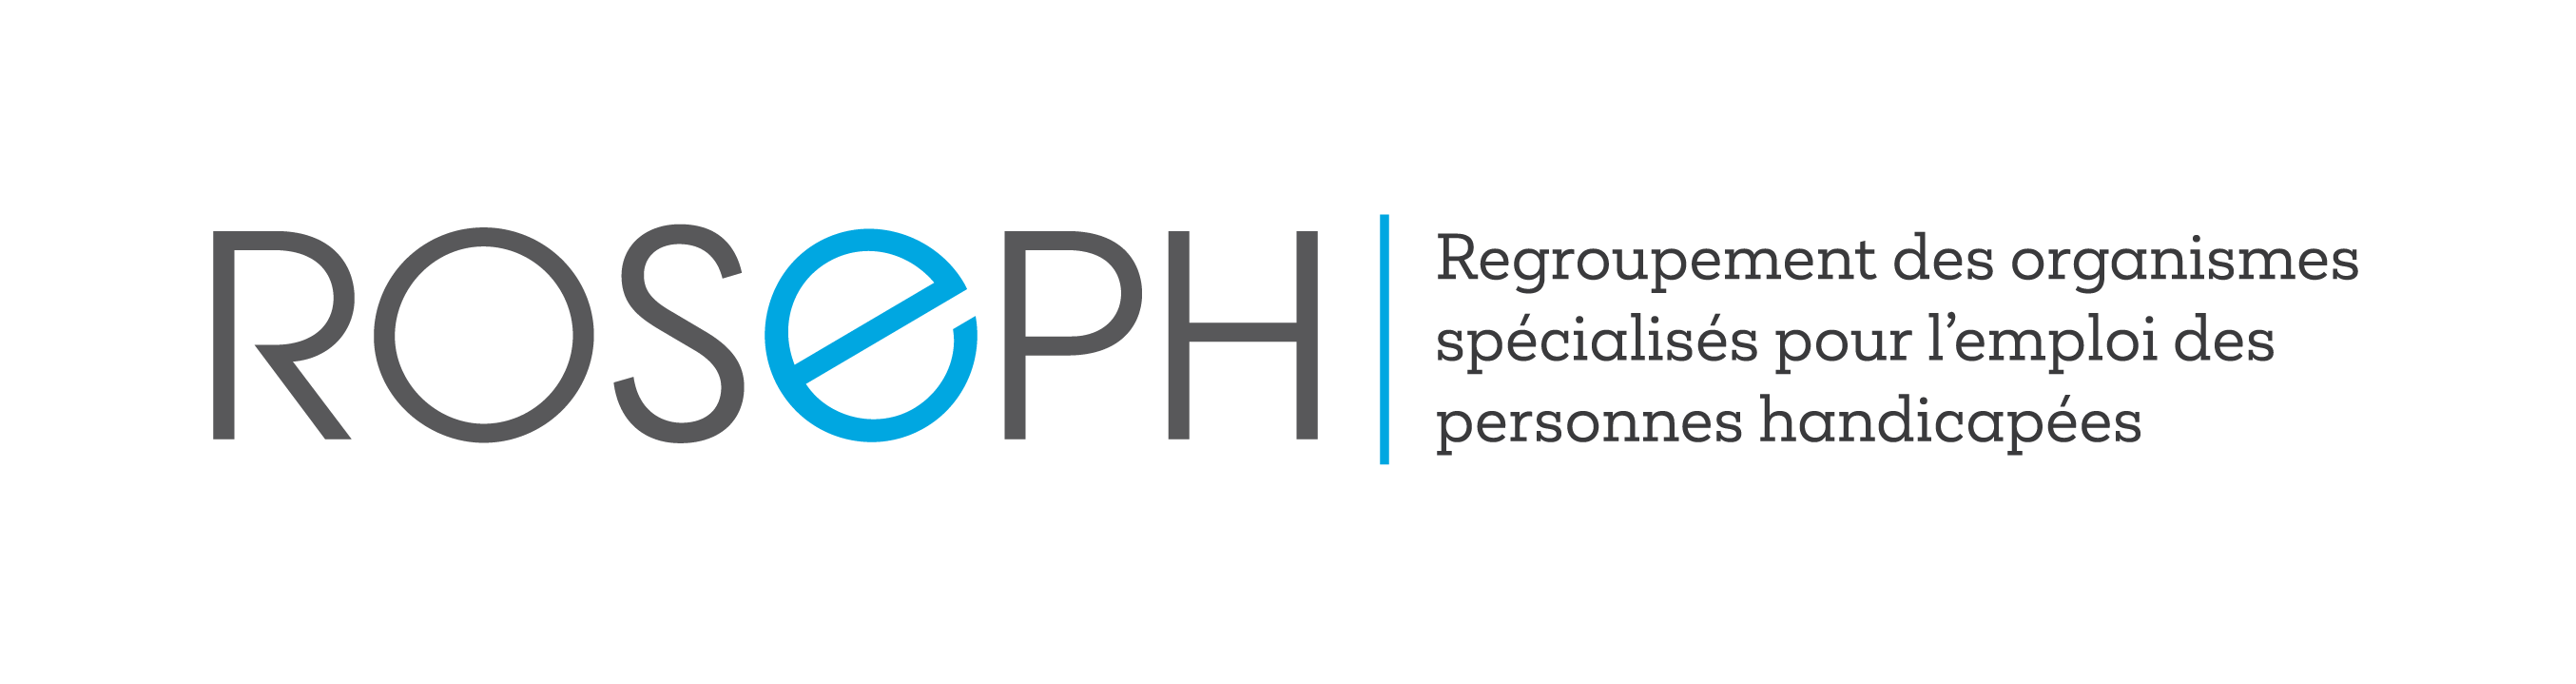 Logo regroupement des organismes spécialisés pour l'emploi des personnes handicapés